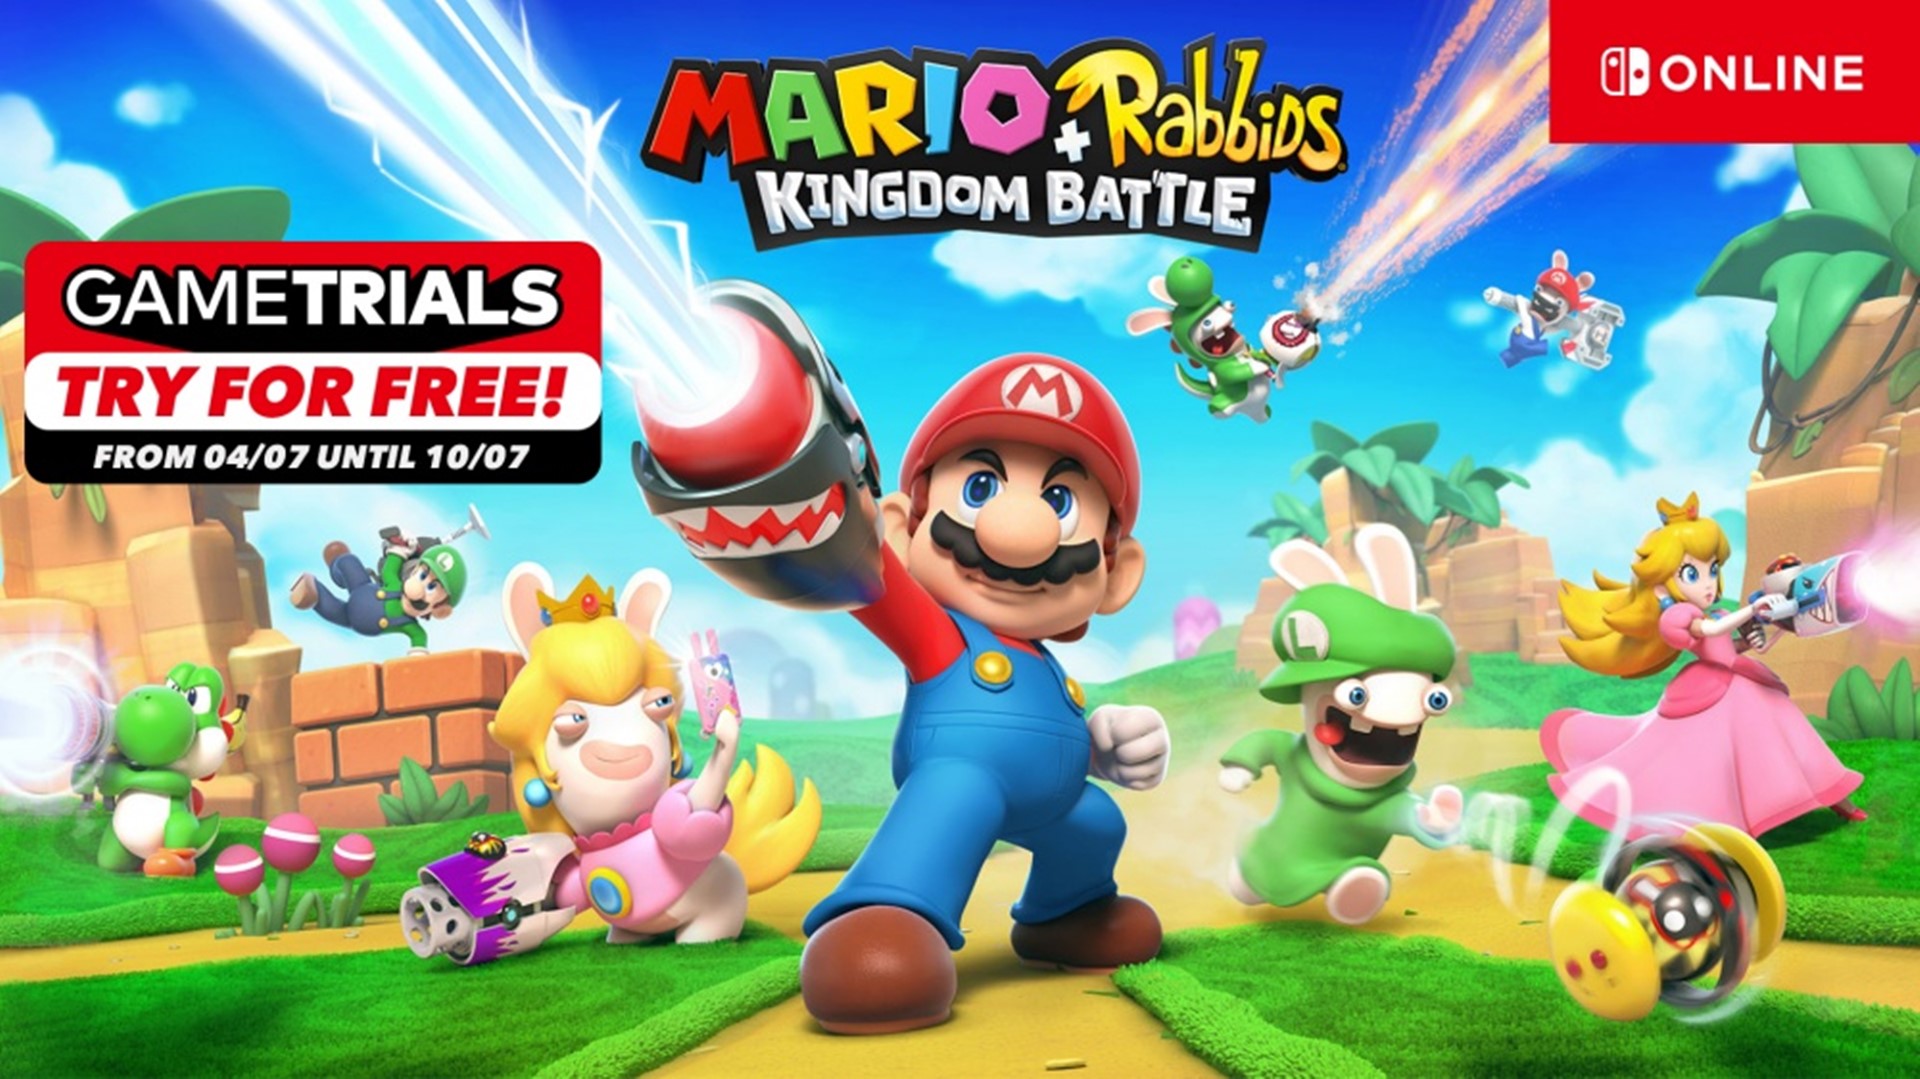 เกม Mario + Rabbids Kingdom Battle เปิดให้ลองเล่นฟรีแบบจำกัดเวลา